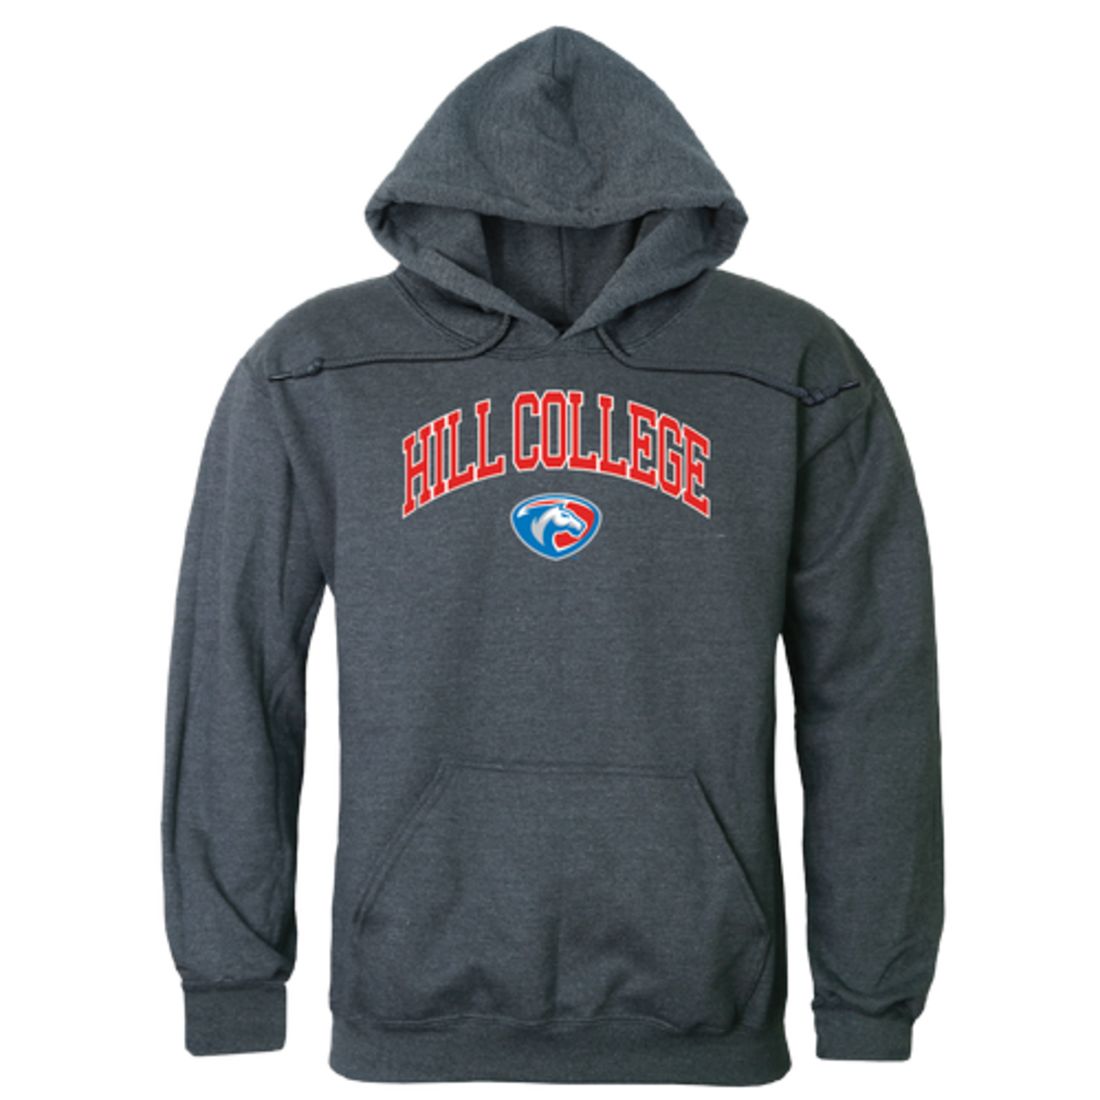 Hill College Rebels Campus Fleece Hoodie Sweatshirts